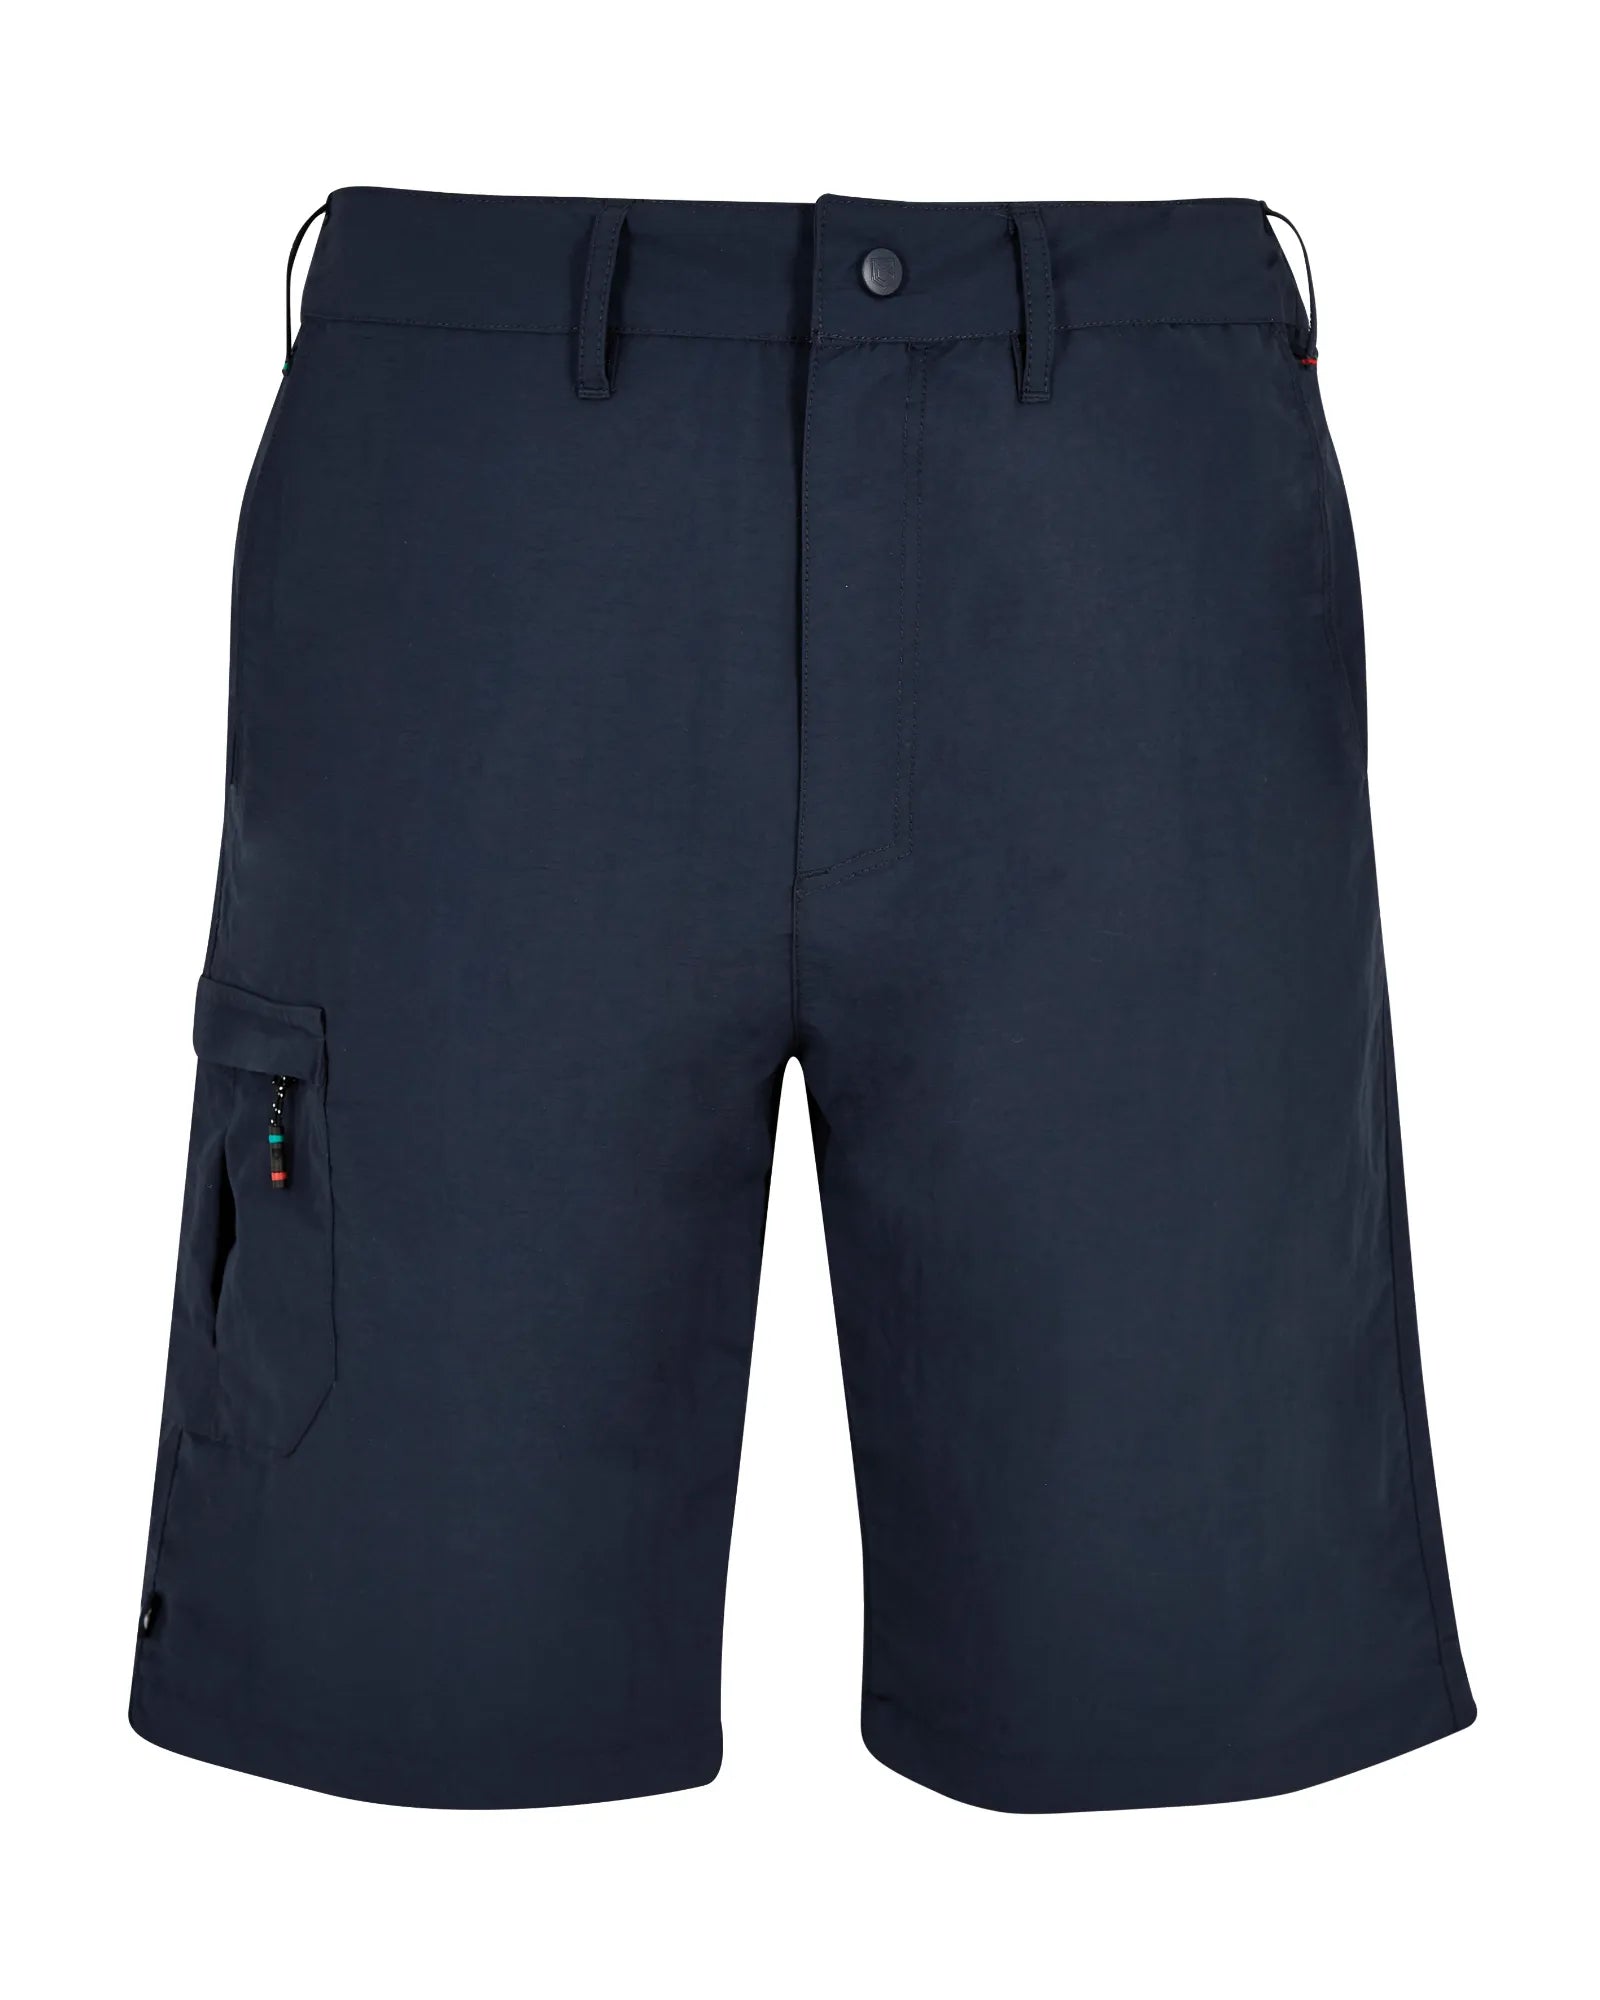 Cyprus Shorts - Navy